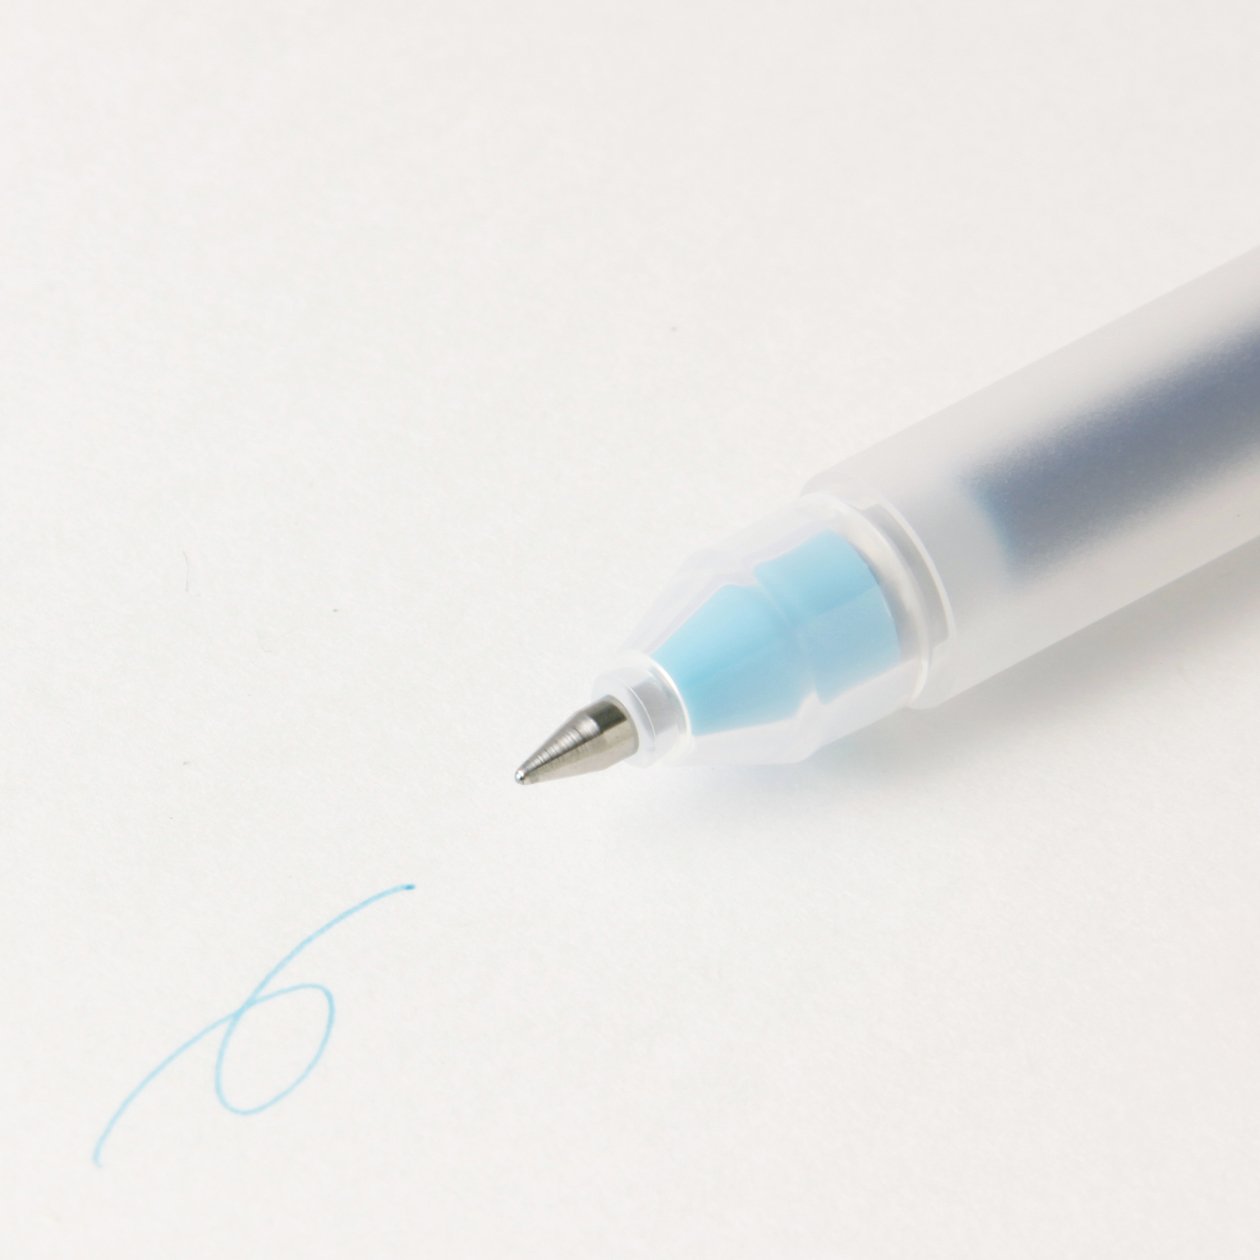 MUJI Gel Ink Pen Blue Black / 0.5 mm